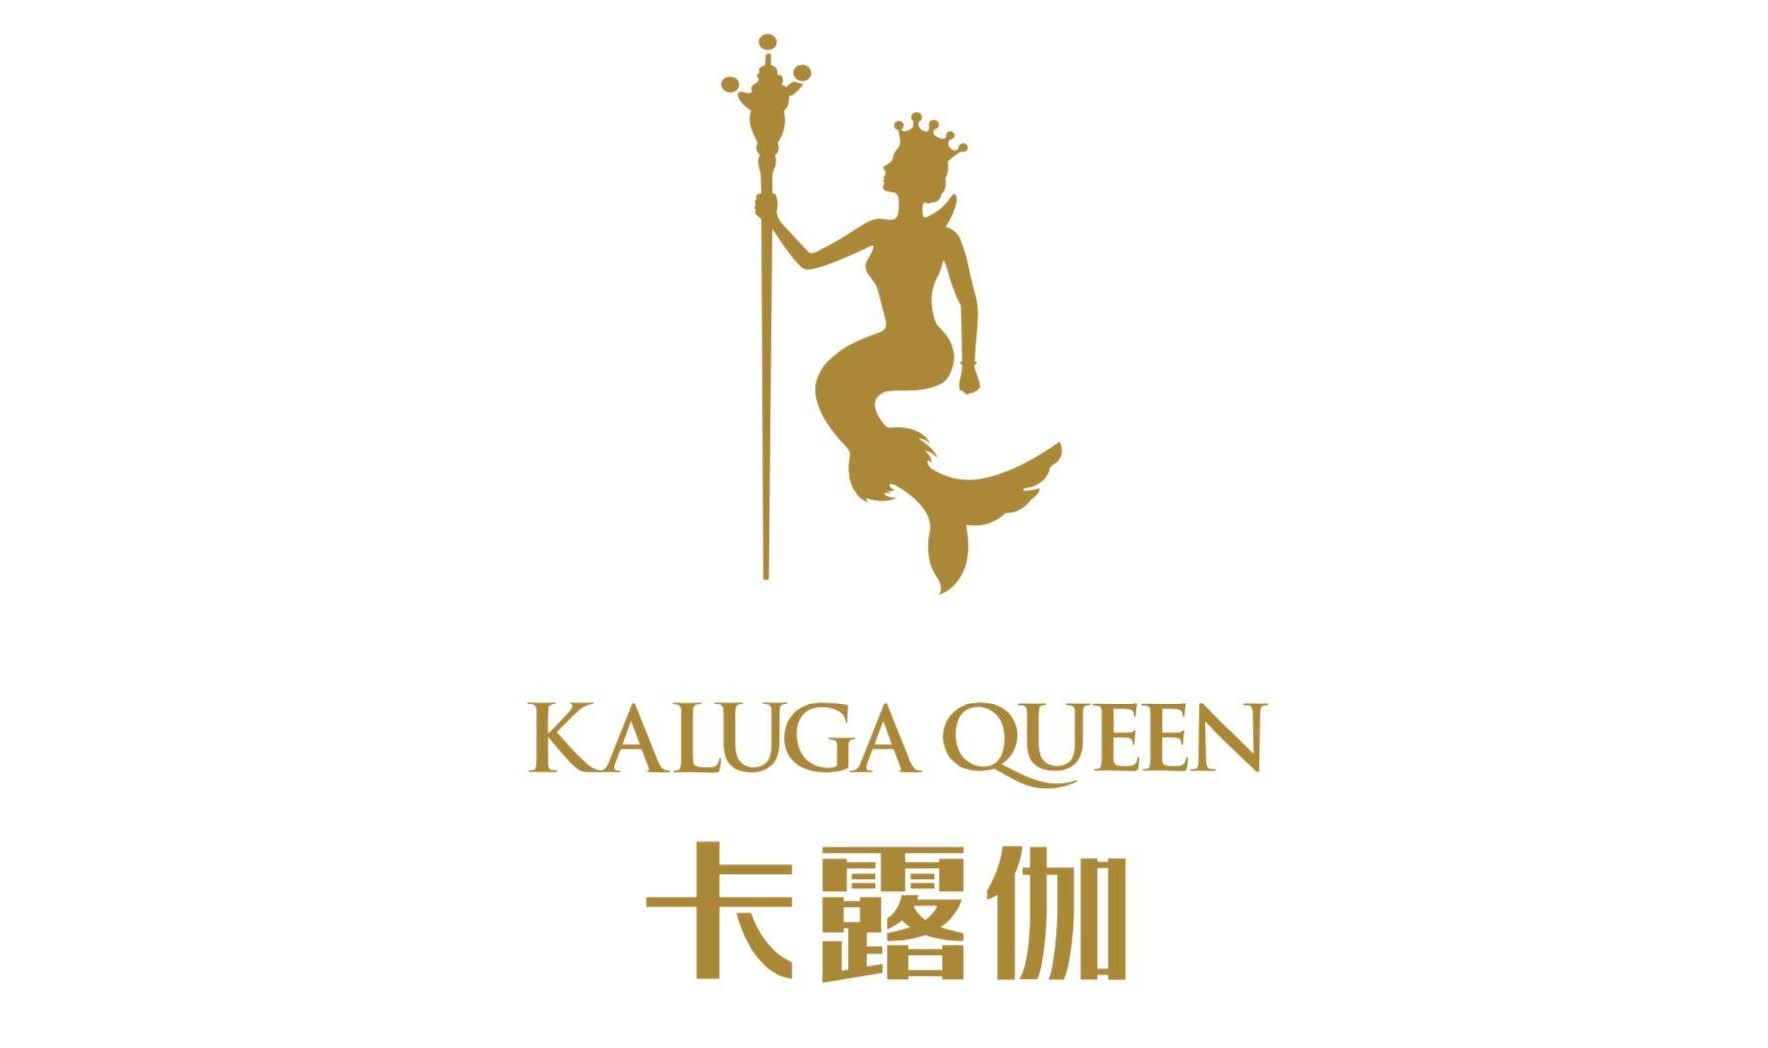 Kaluga Queen